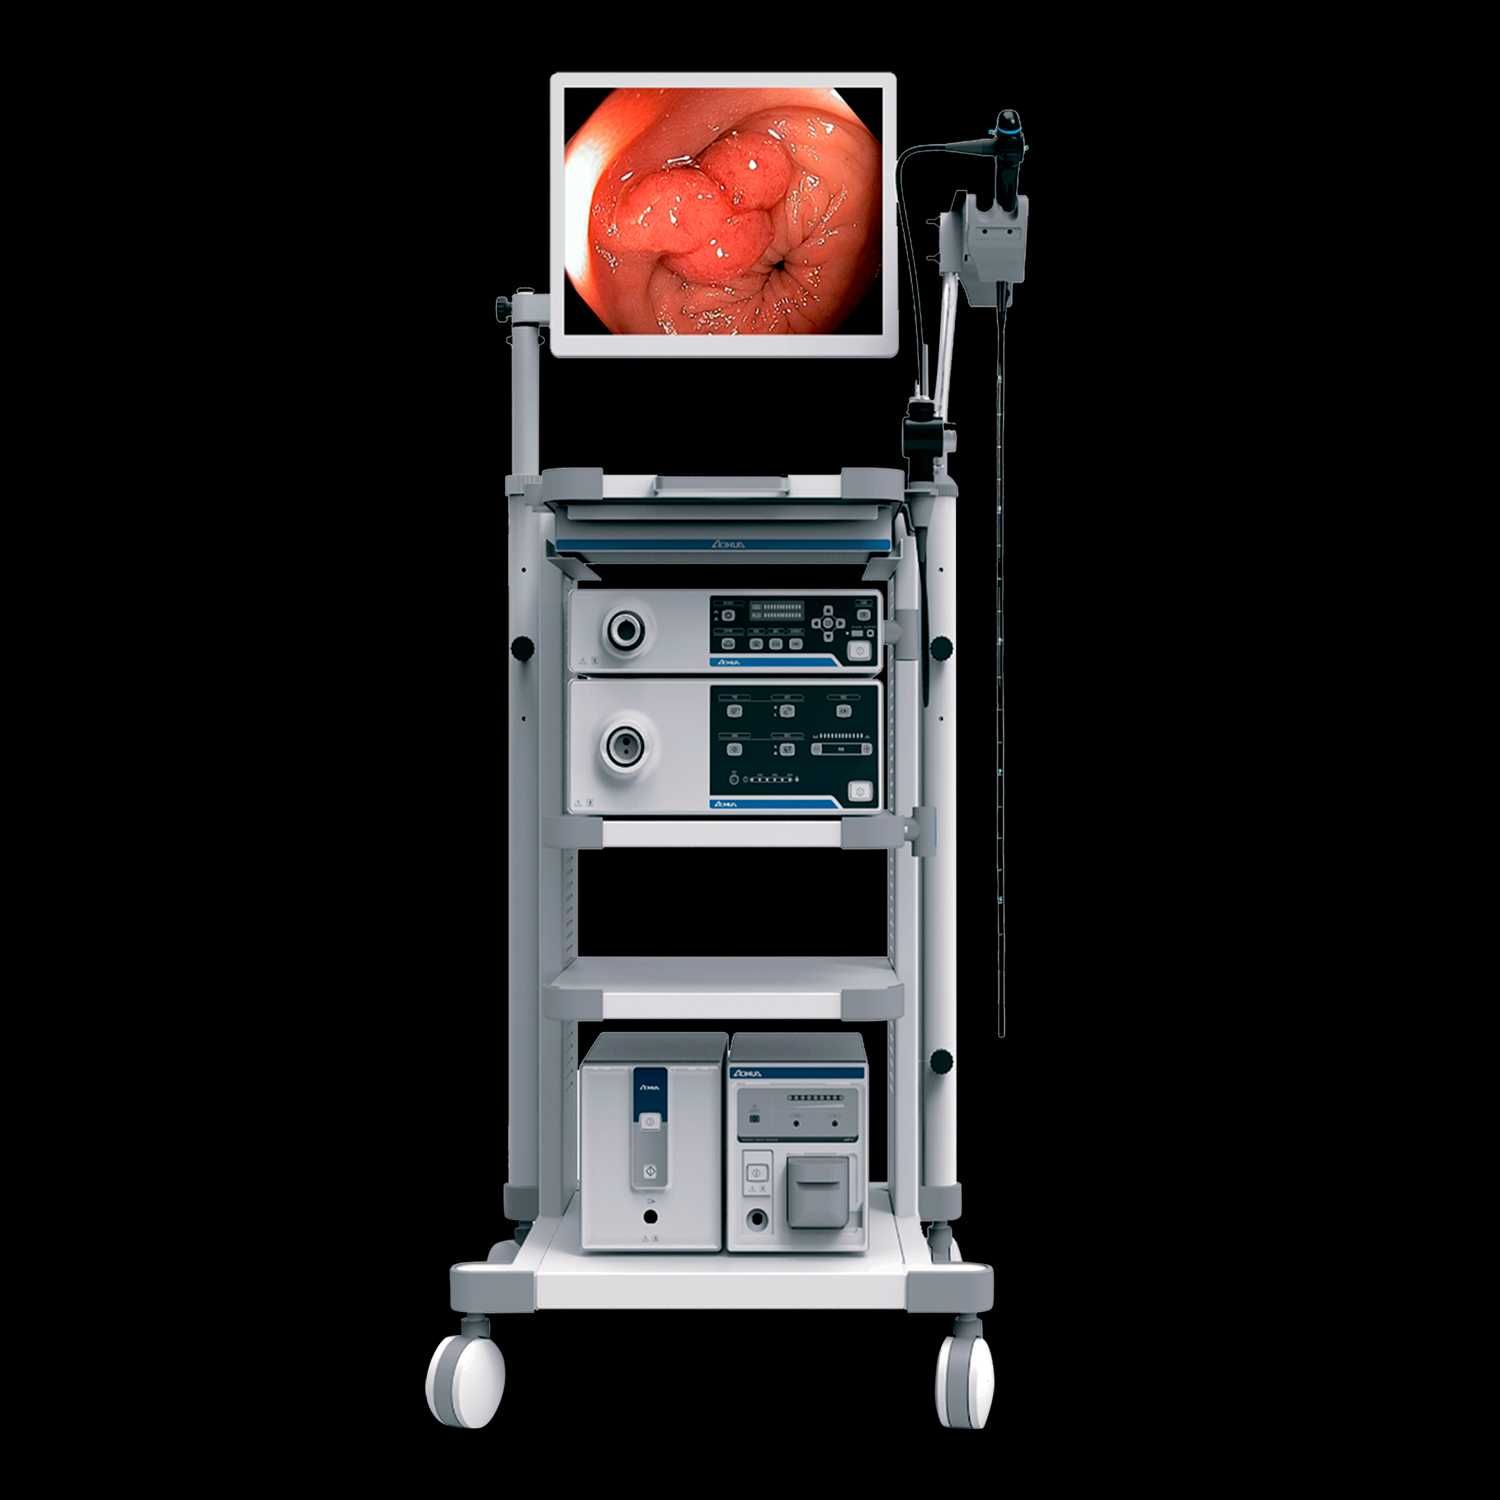 ФГДС аппарат VME2800 (Видео эндоскопическая система)